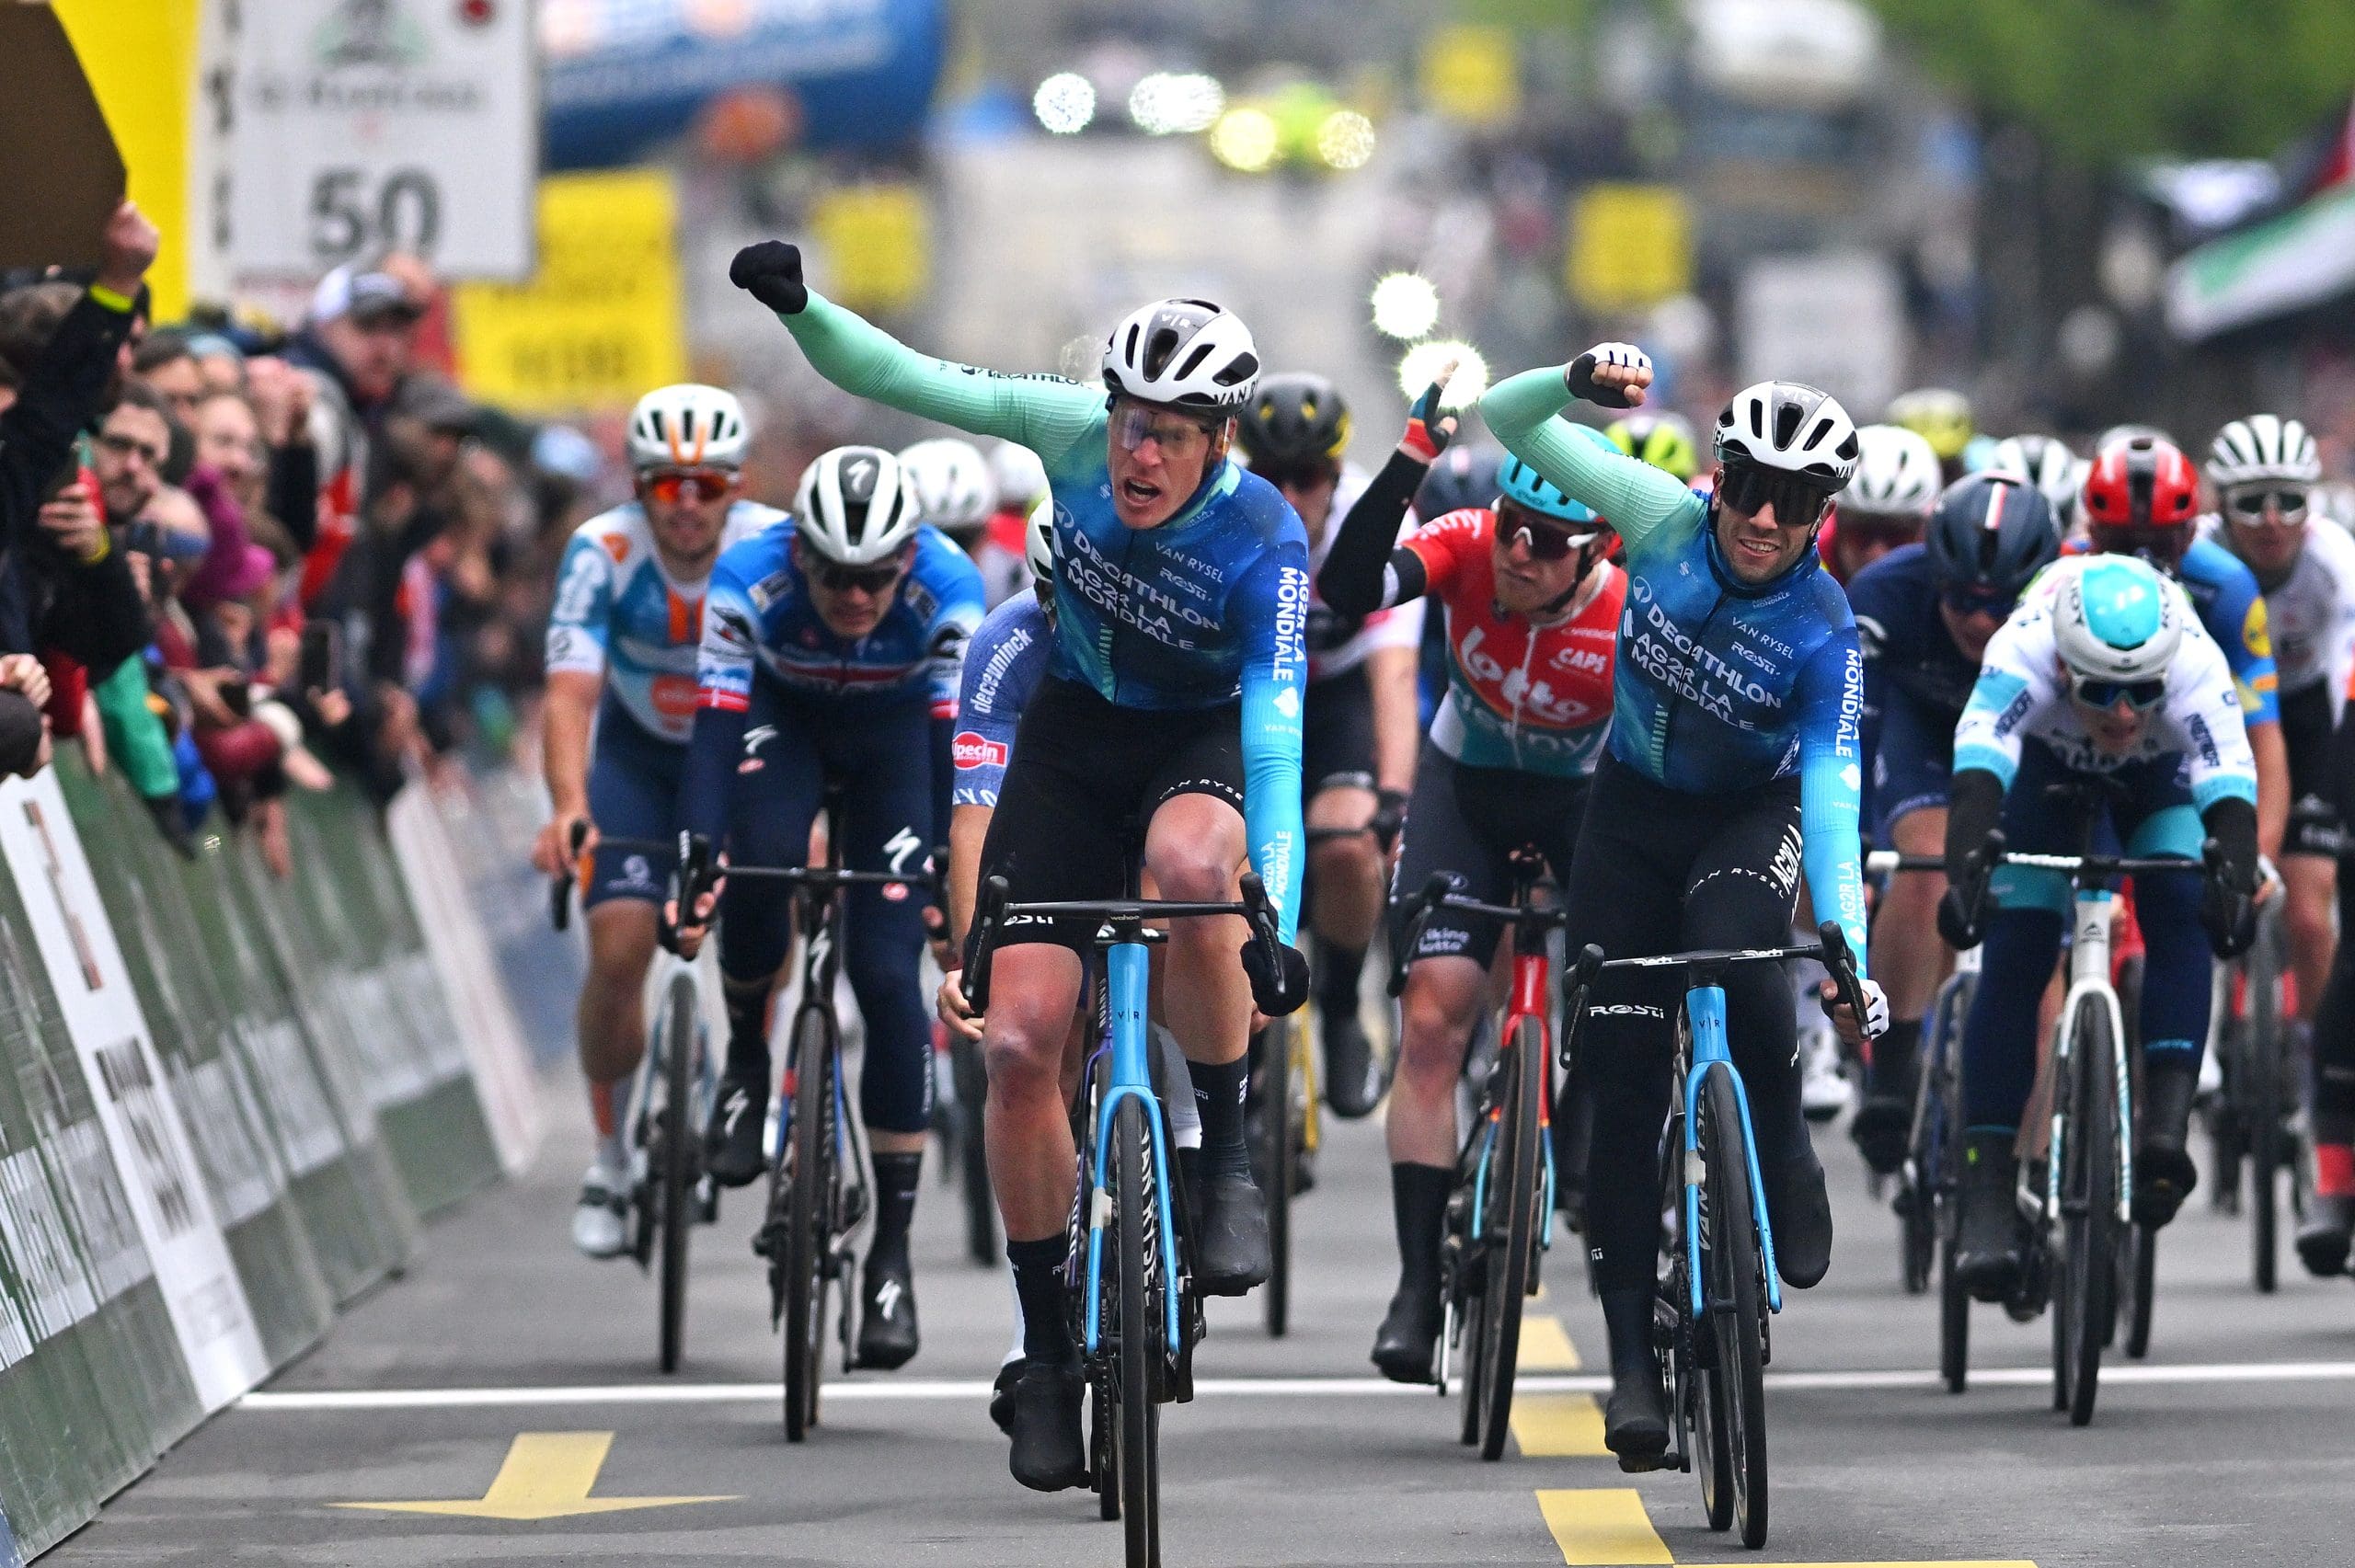 Coup double pour Dorian Godon, vainqueur de la 1re étape devant Andrea Vendrame, et nouveau leader du Tour de Romandie